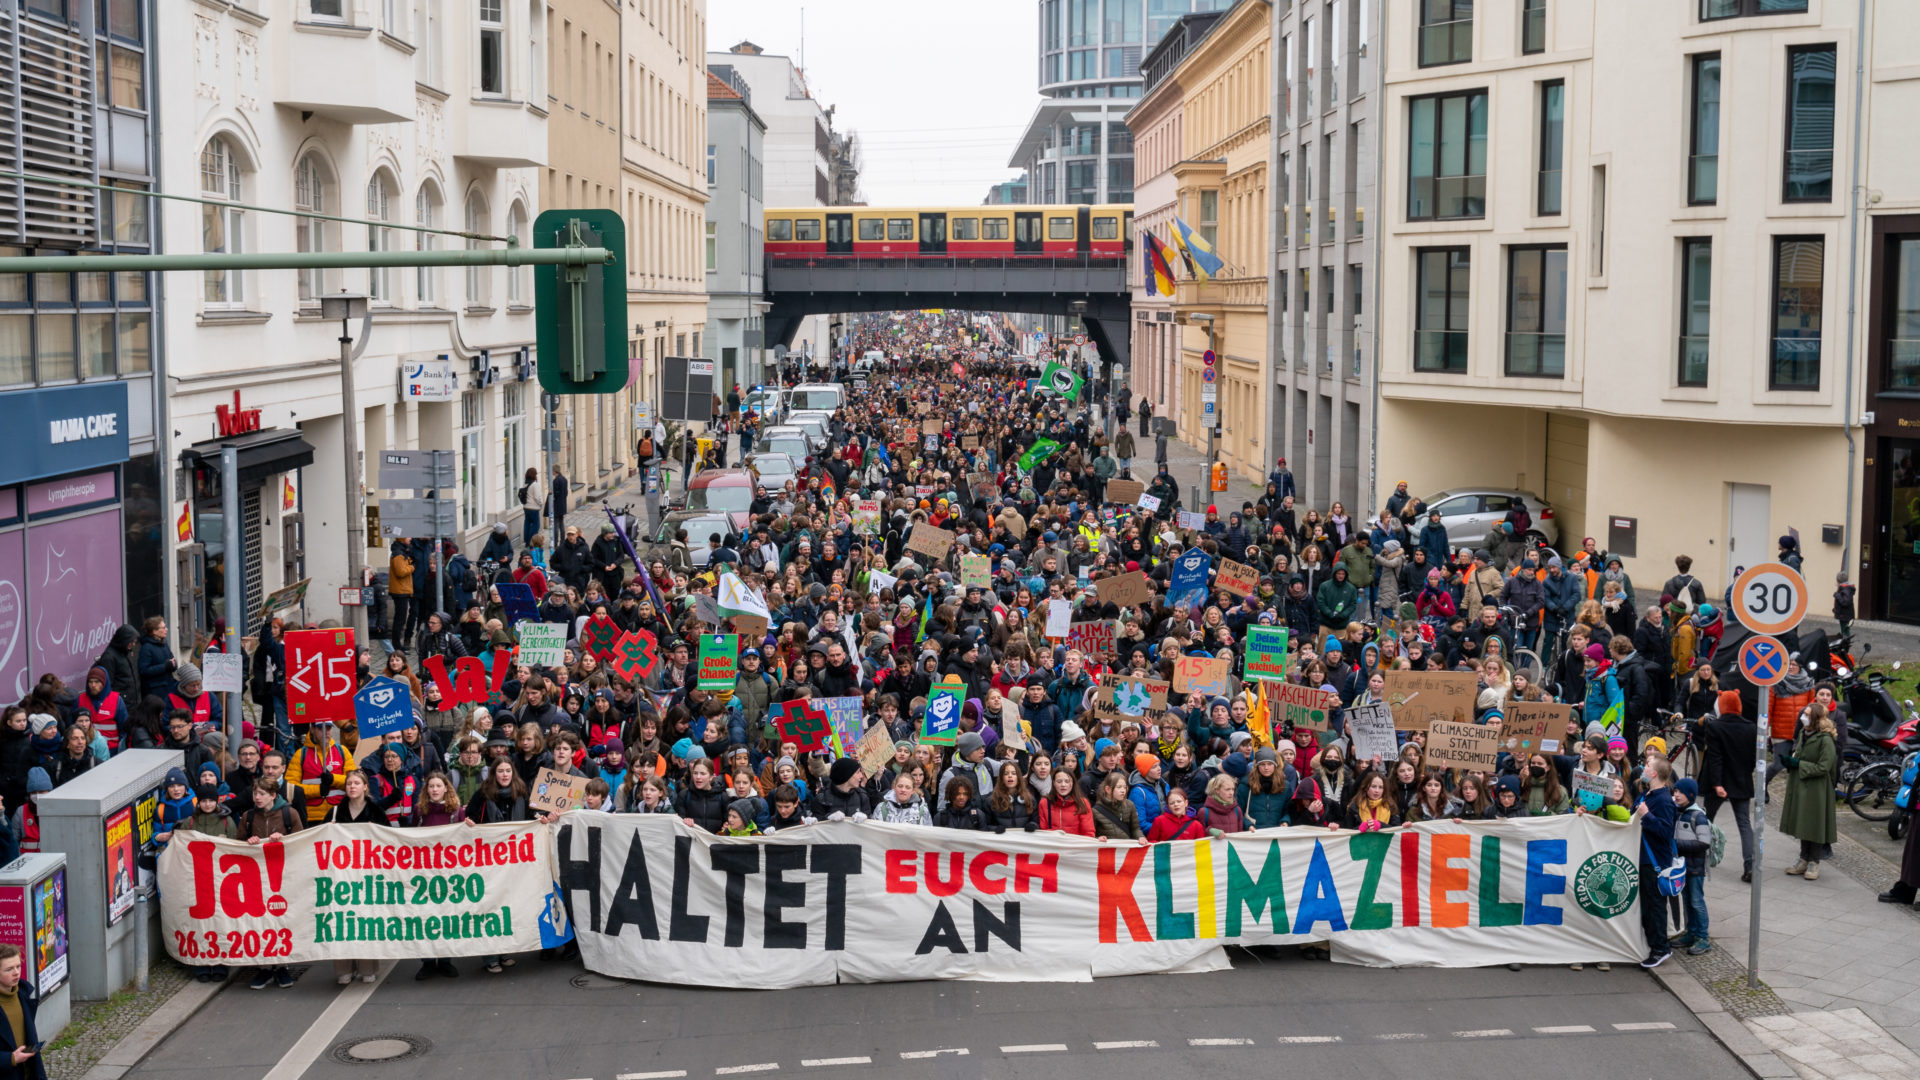 Fridays for Future Klimastreik am 3.3.2023. Zu sehen ist das Fronttranspi auf dem staht "Haltet euch an Klimaziele". Foto: Daniel Teichmann